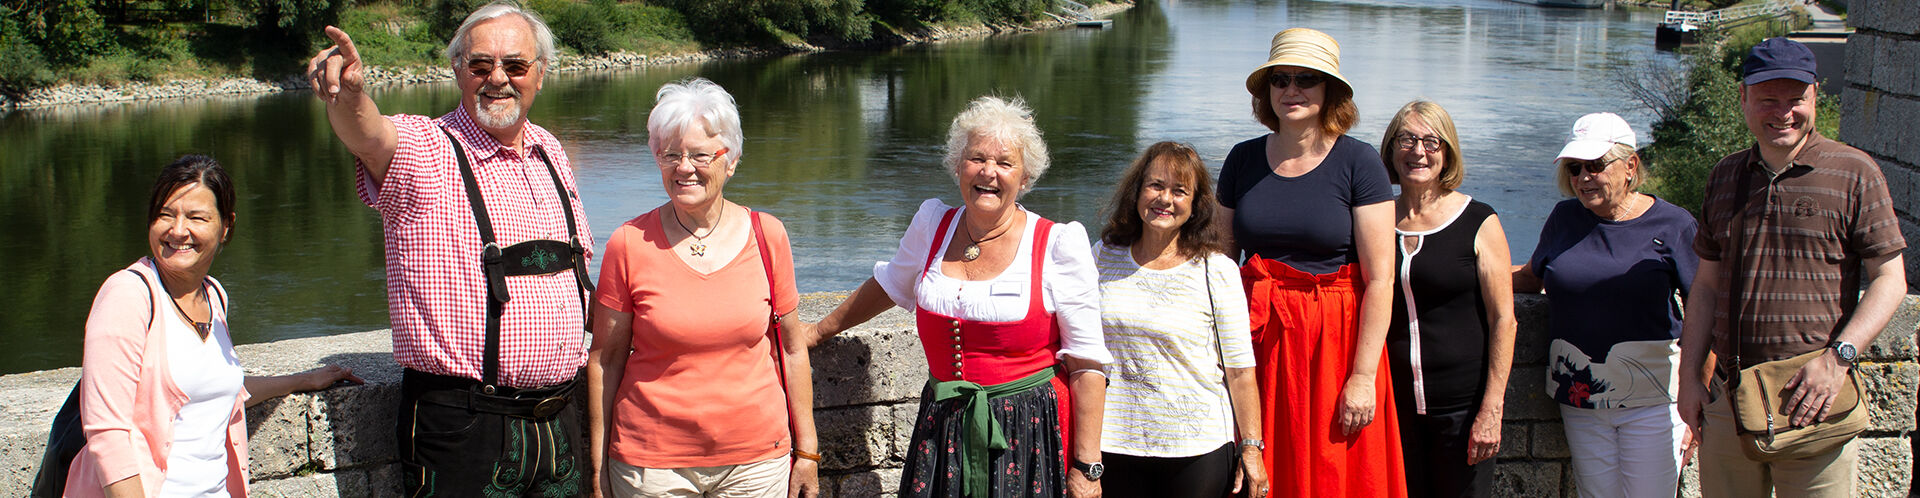 Gruppenbild der Straubinger Stadtführer vor der Donau